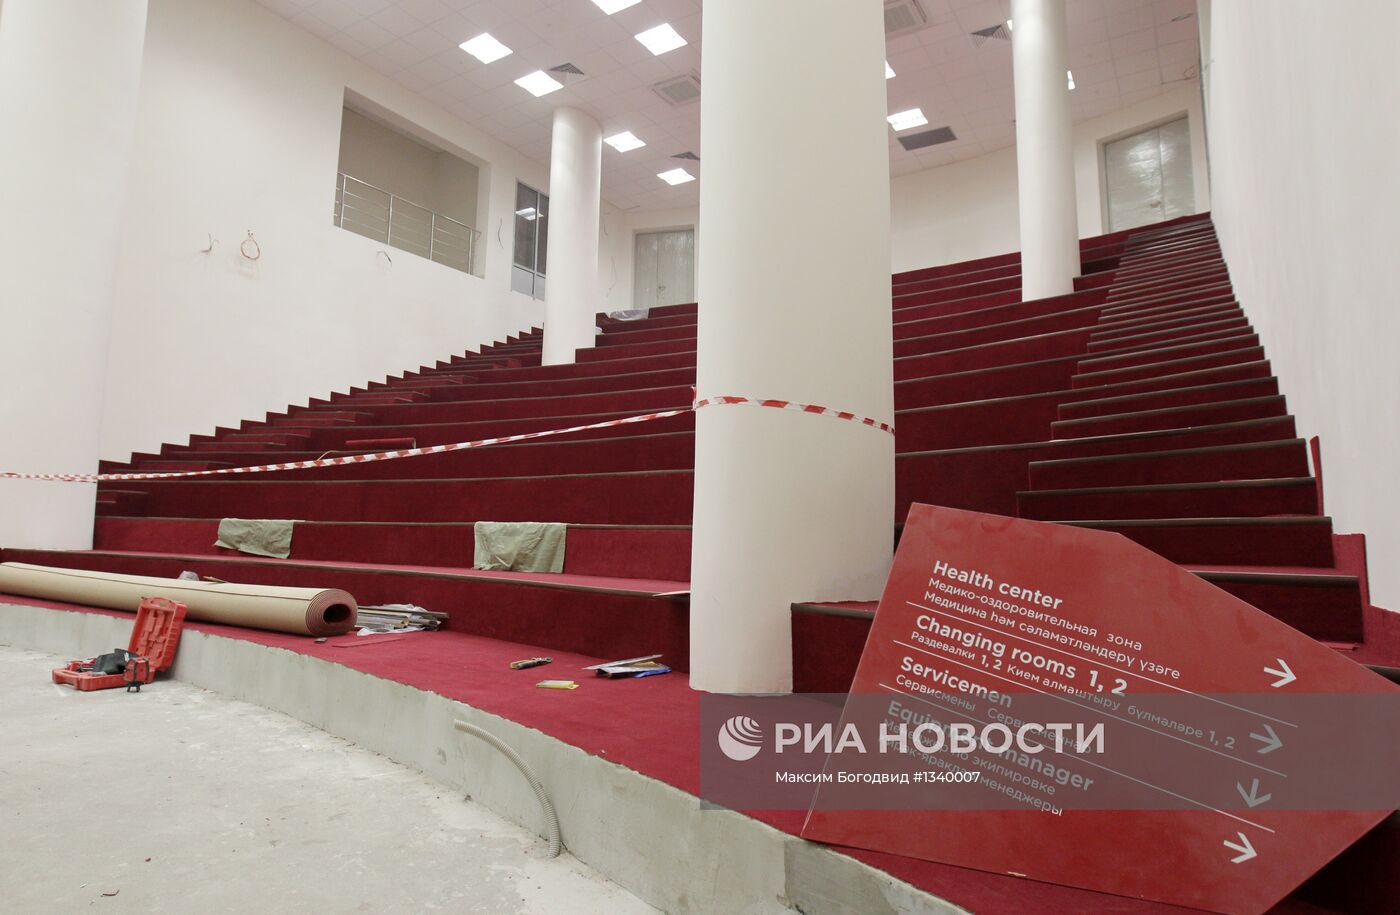 Строительство стадиона "Казань-Арена" в Казани